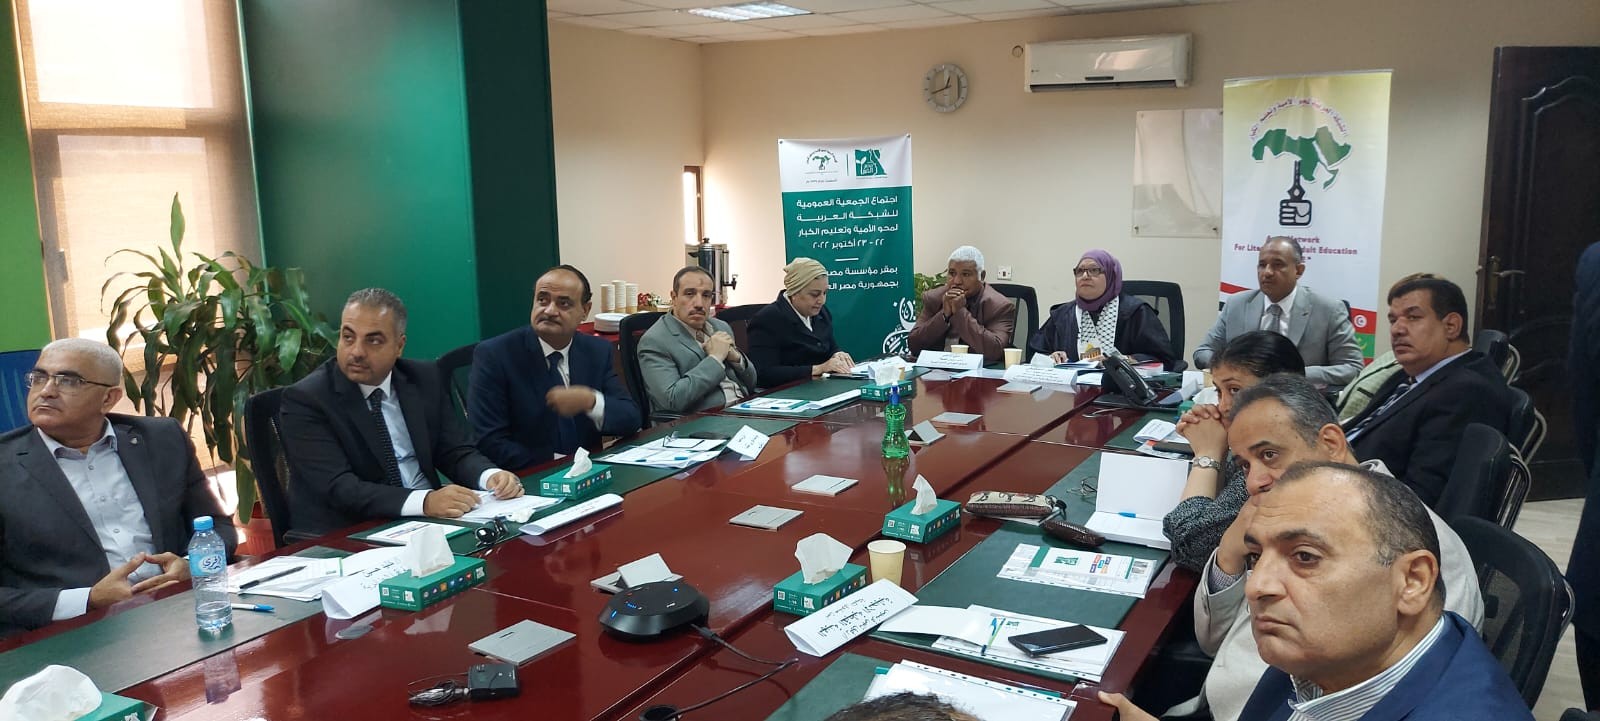 اجتماع الجمعية العمومية للشبكة العربية لمحو الأمية وتعليم الكبار في القاهرة.jpg